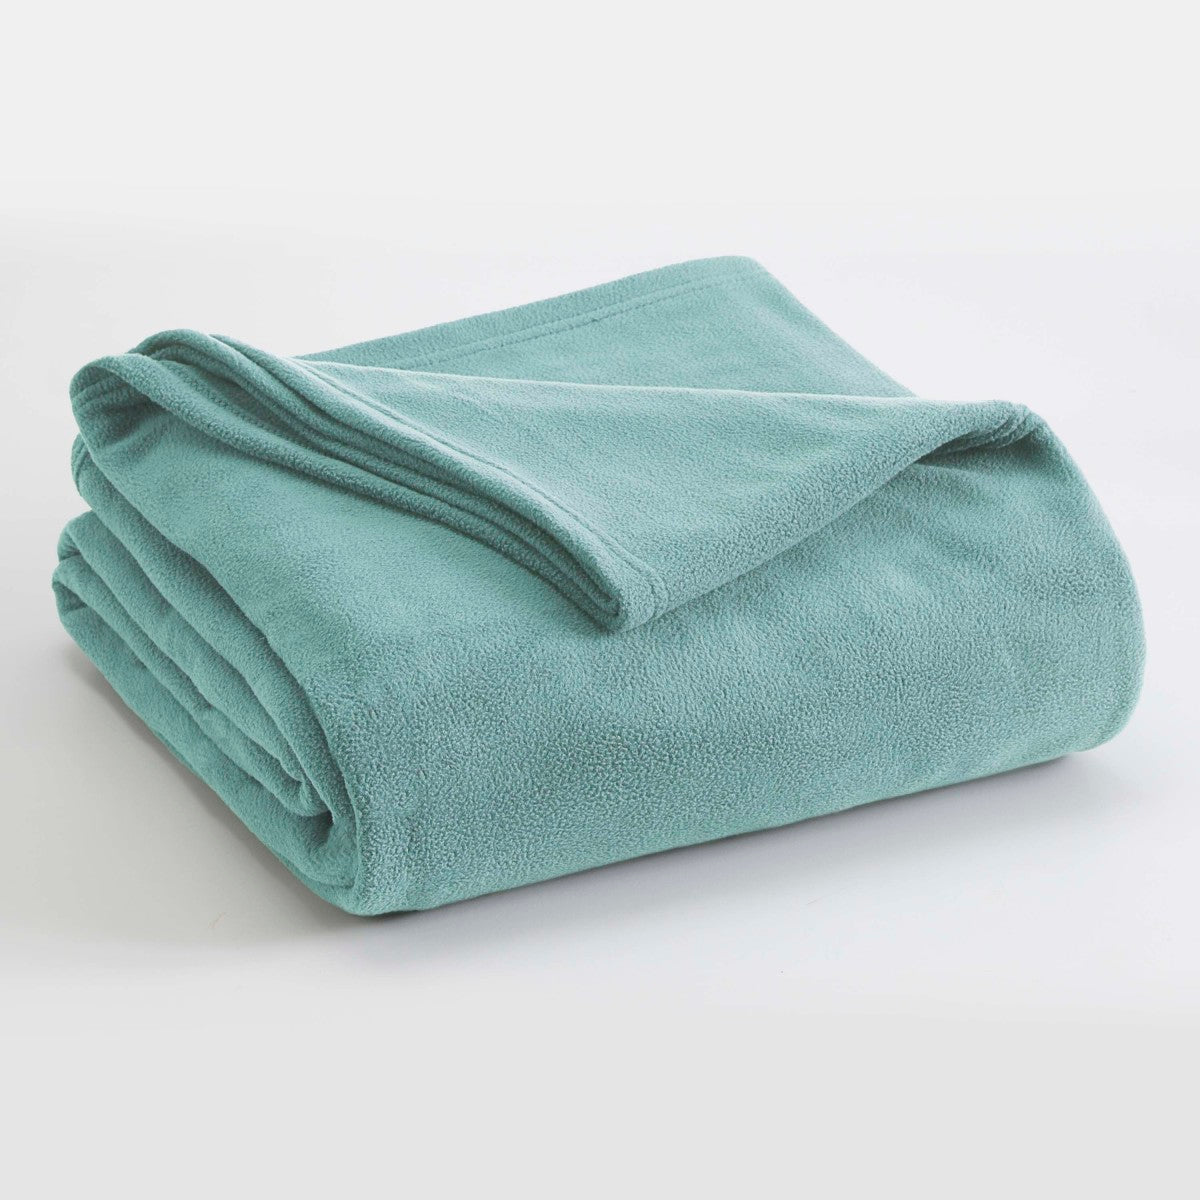 https://westpointhome.com/cdn/shop/products/Vellux-Light-Blue-Fleece-Blanket-1.jpg?v=1639167859